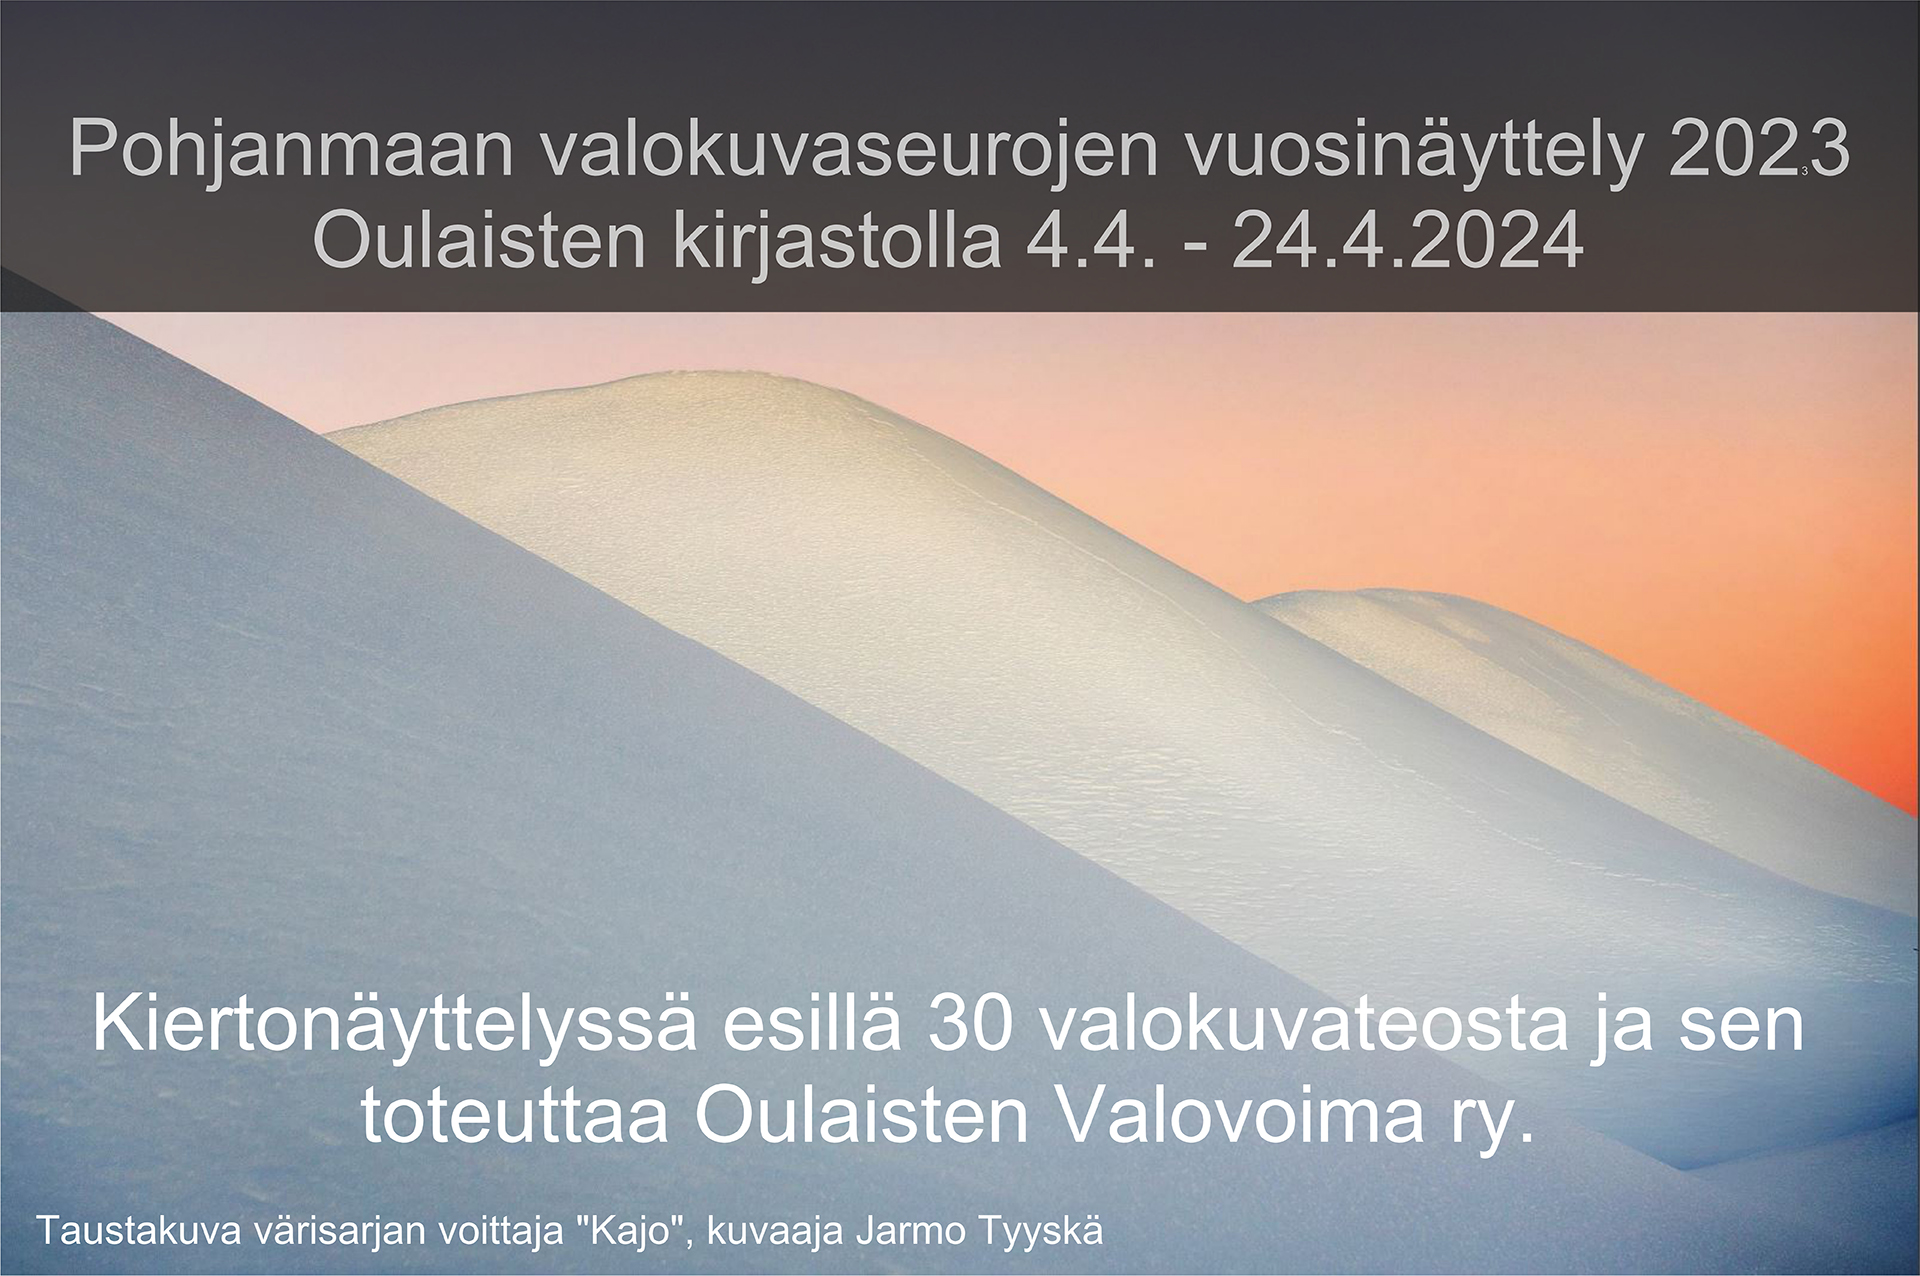 Juliste näyttelystä ja taustakuvassa Jarmo Tykän Värisarjan voittaja "Kajo"